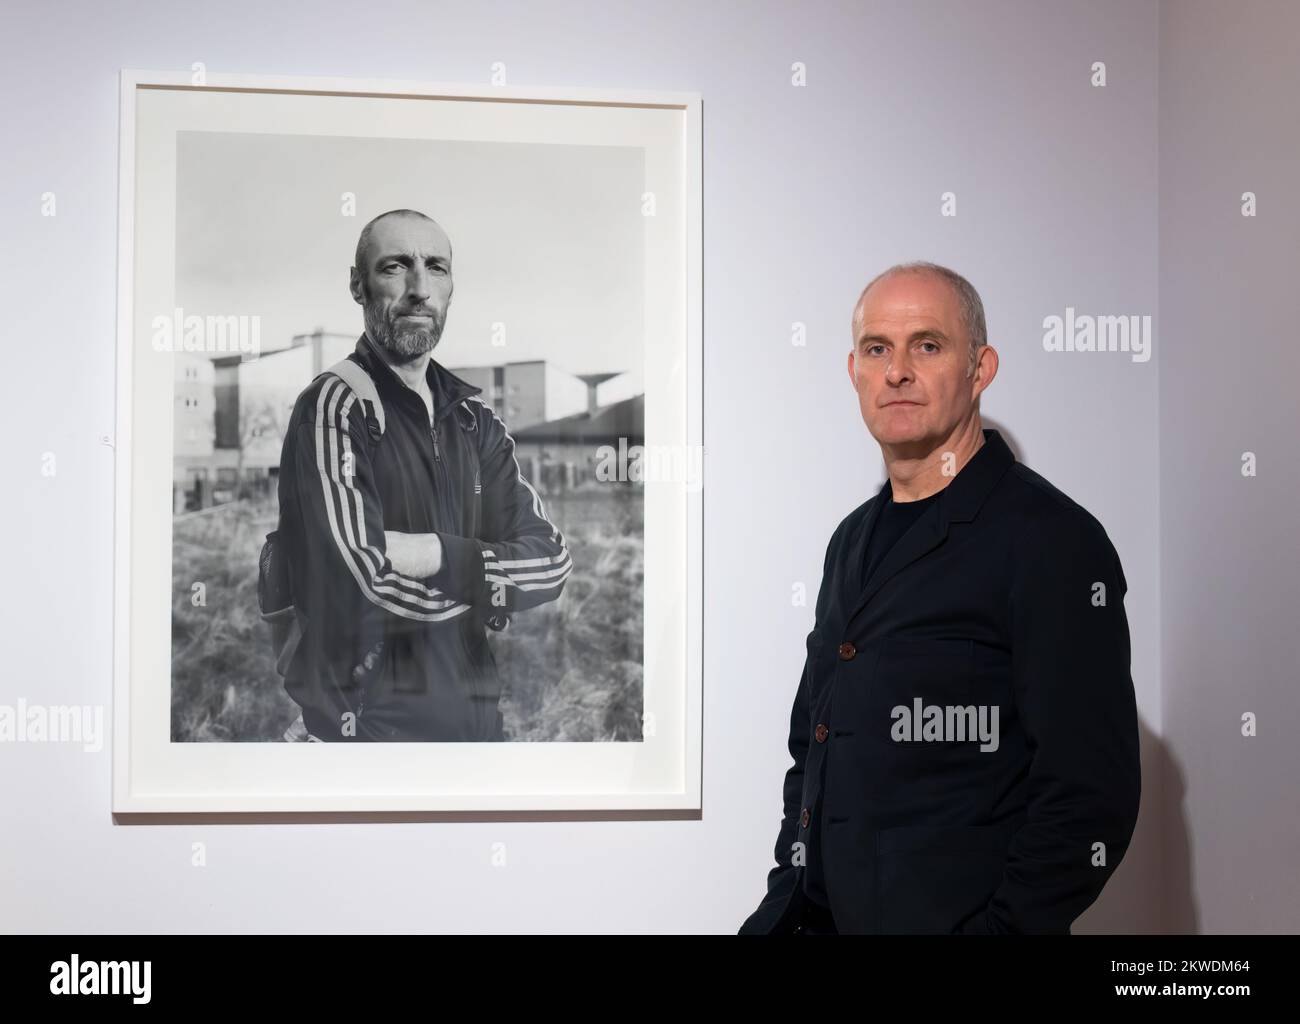 Paul Duke lors de son exposition de photographie des résidents de Muirhouse au City Art Center, Édimbourg, Écosse, Royaume-Uni Banque D'Images